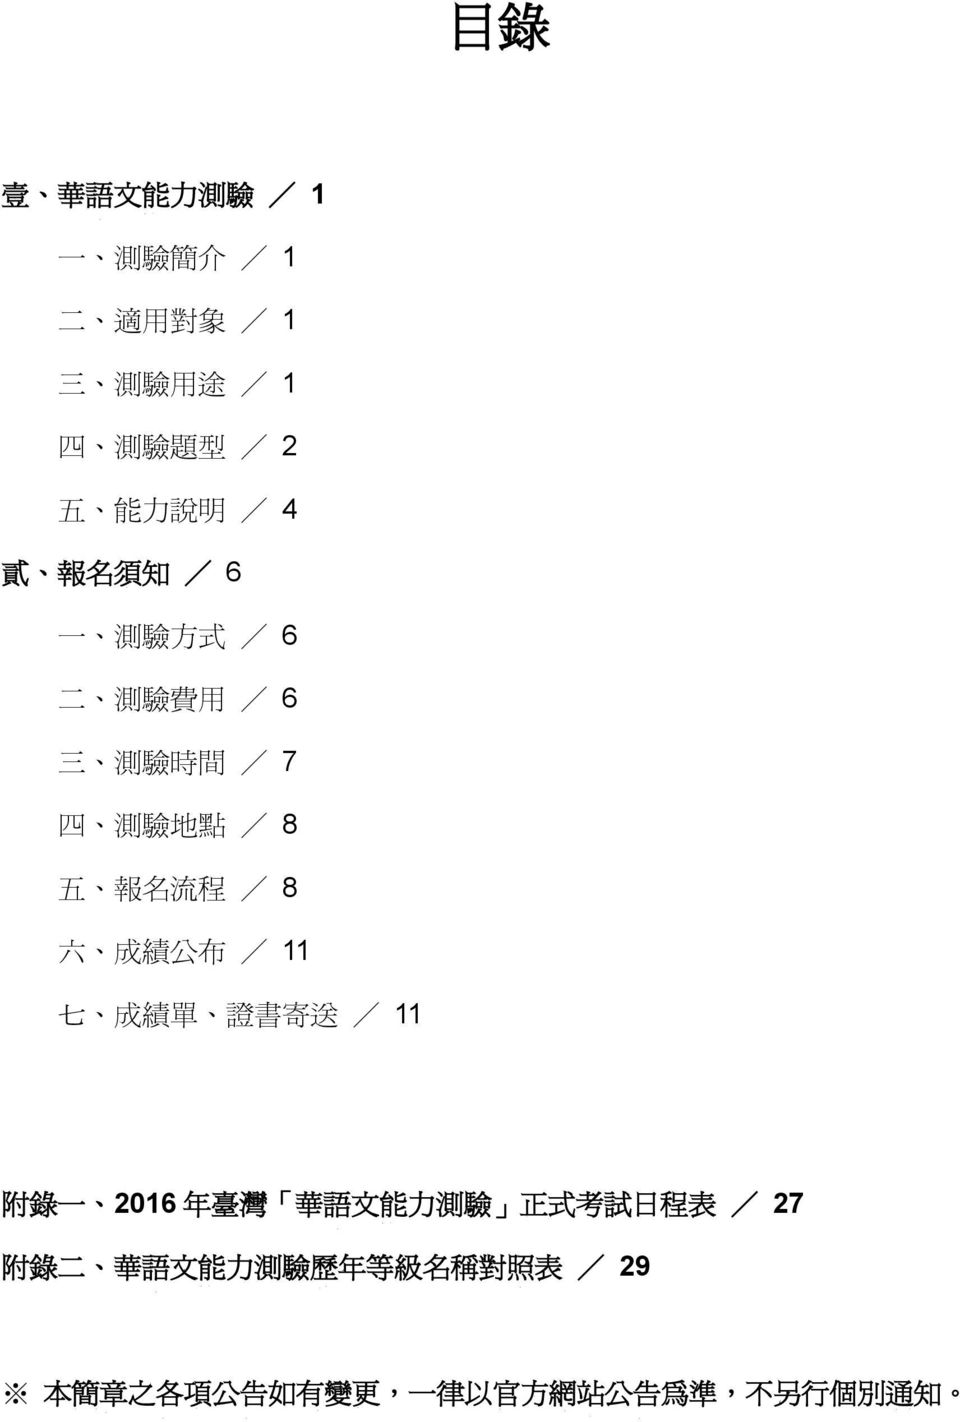 公 布 / 11 七 成 績 單 證 書 寄 送 / 11 附 錄 一 2016 年 臺 灣 華 語 文 能 力 測 驗 正 式 考 試 日 程 表 / 27 附 錄 二 華 語 文